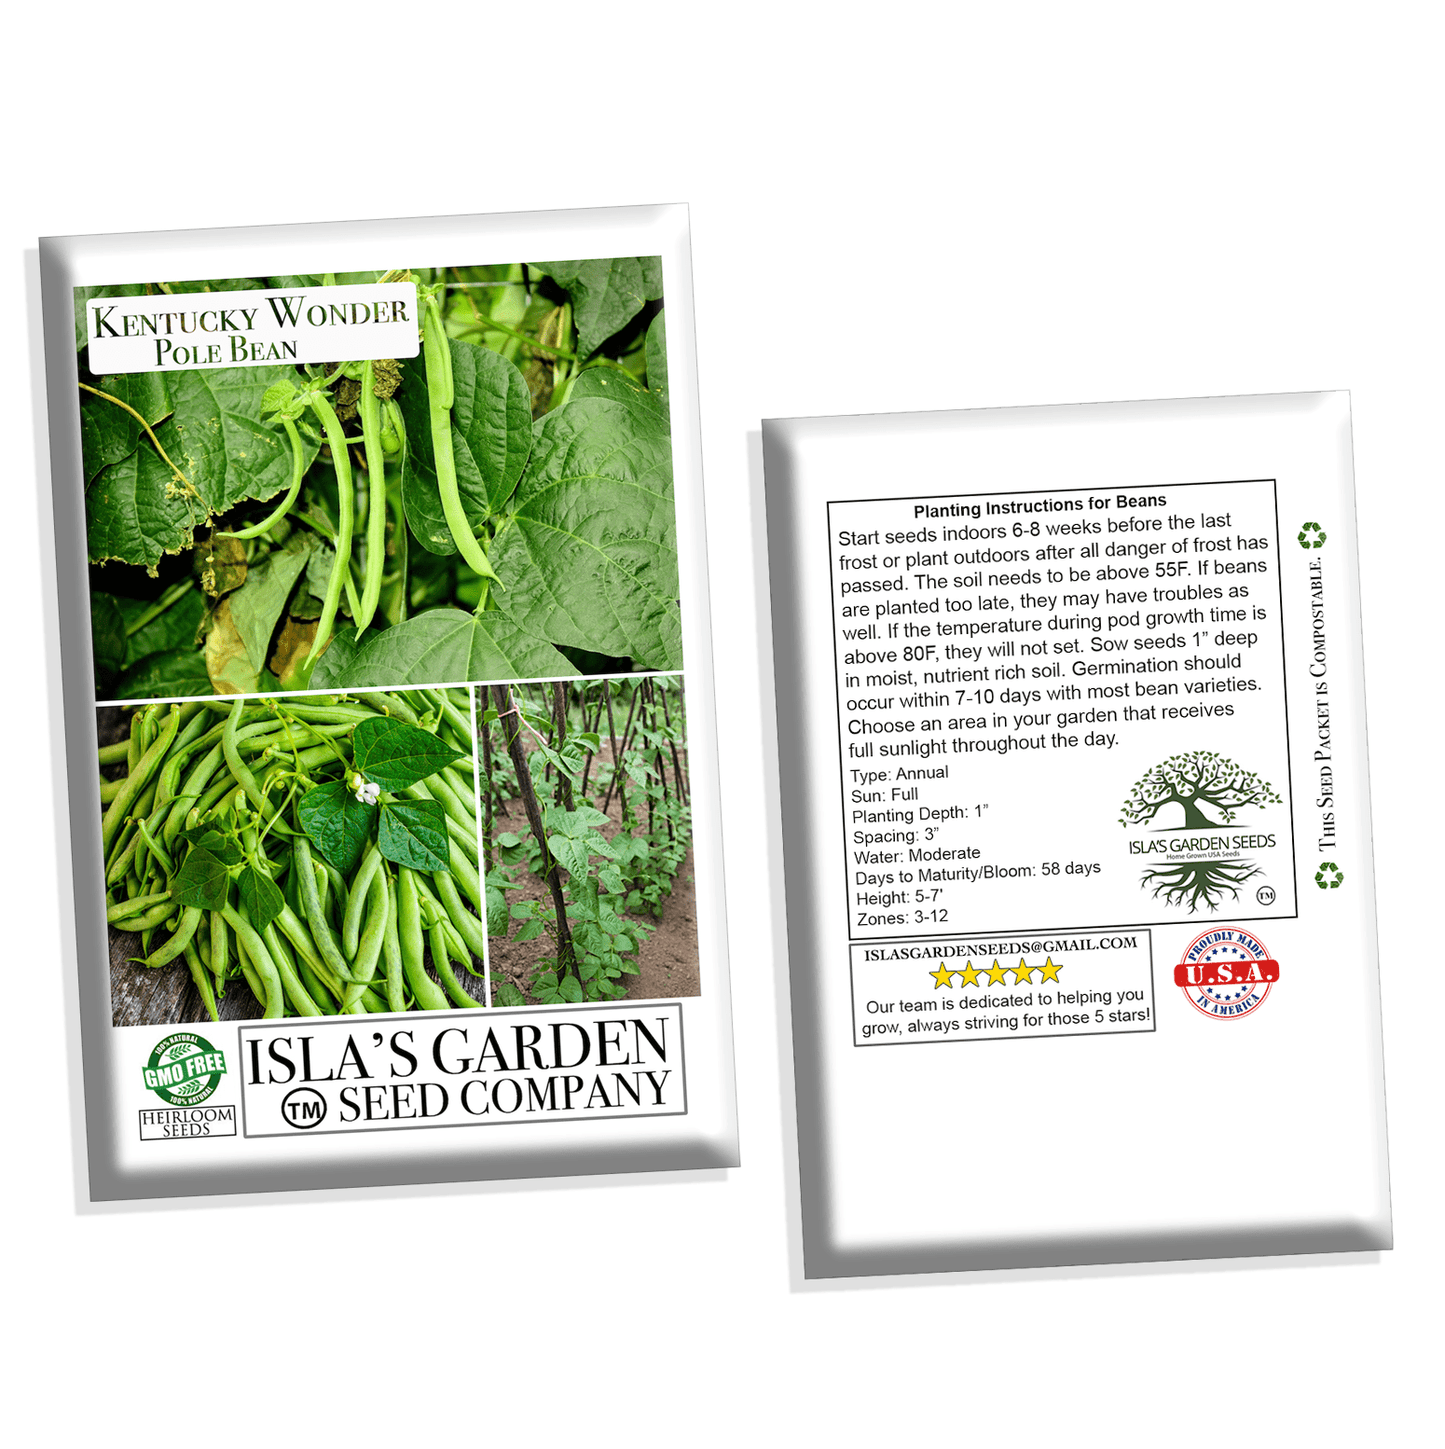 Kentucky Wonder Pole Bean Seeds, 30 Heirloom Seeds Per Packet, Non GMO Seeds